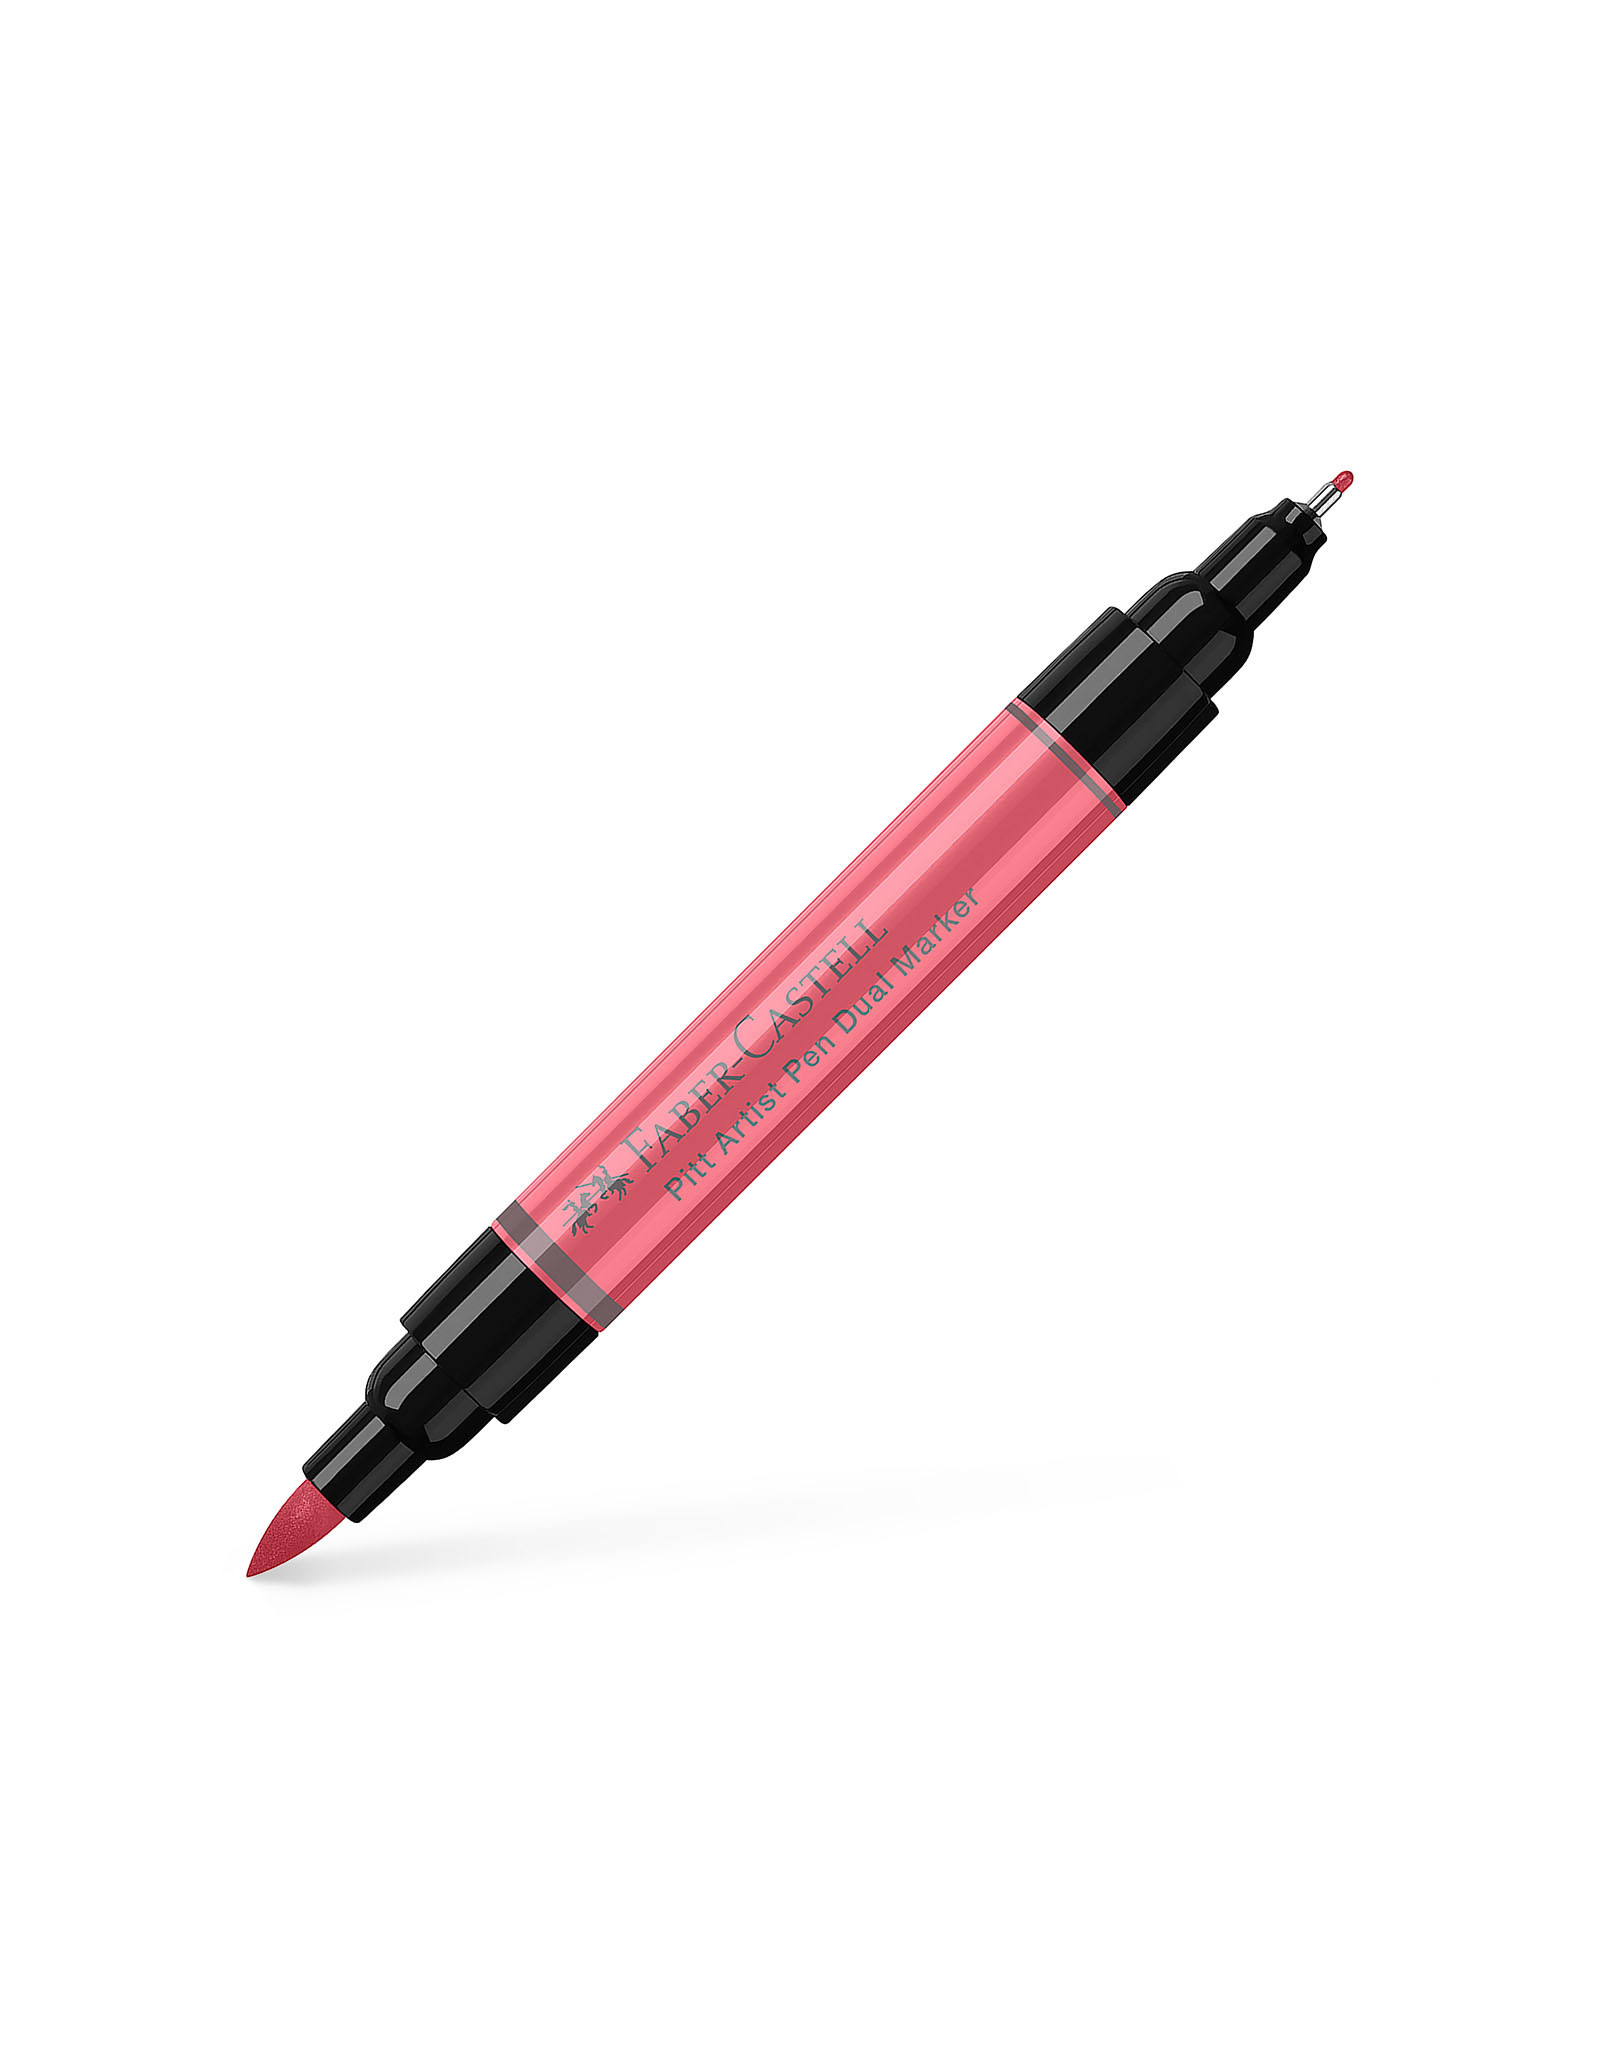 FABER-CASTELL Pitt Artist Pen Dual Tip Marker, Coral